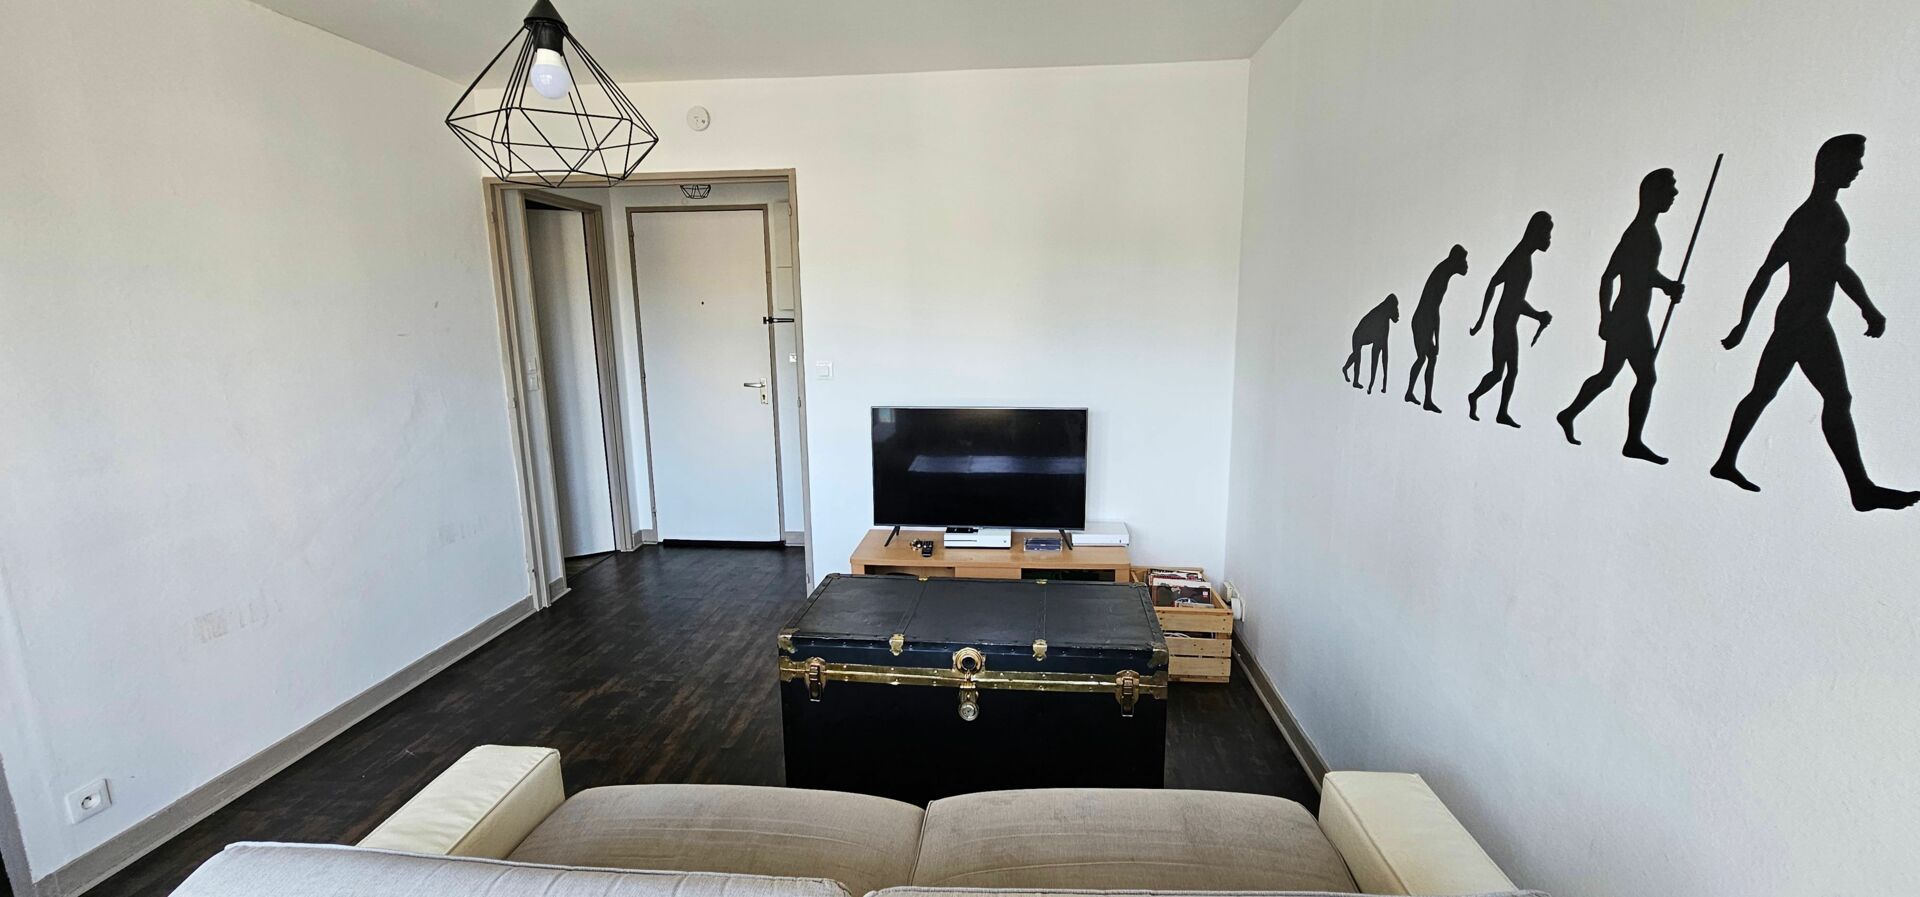 Appartement à vendre 1 29.5m2 à Poitiers vignette-1